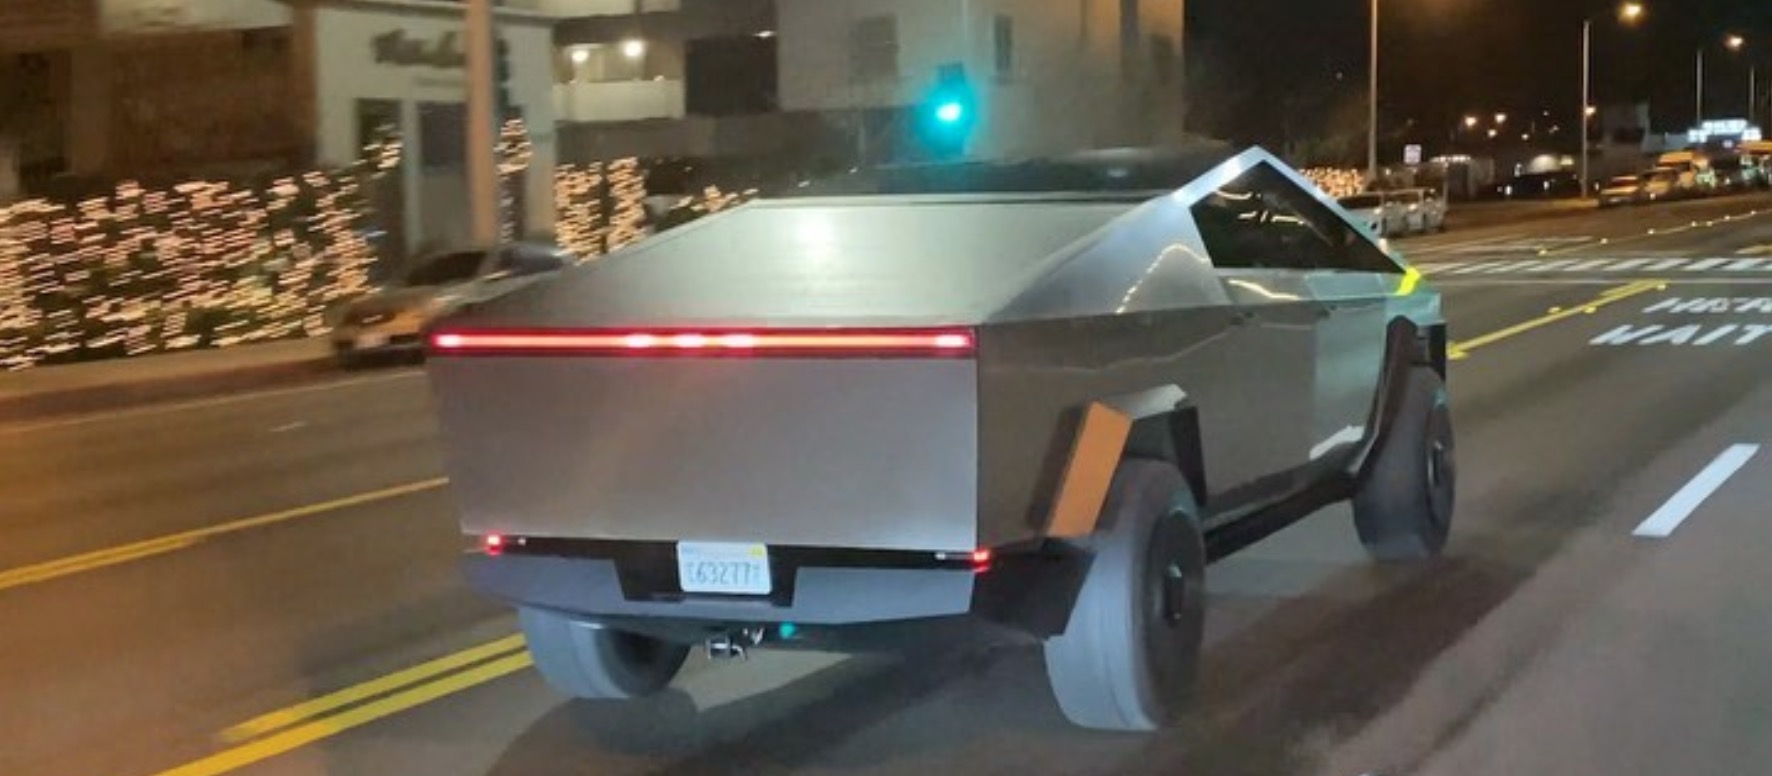 Watch Tesla Cybertruck prototype accelerate like a sports car in new ...